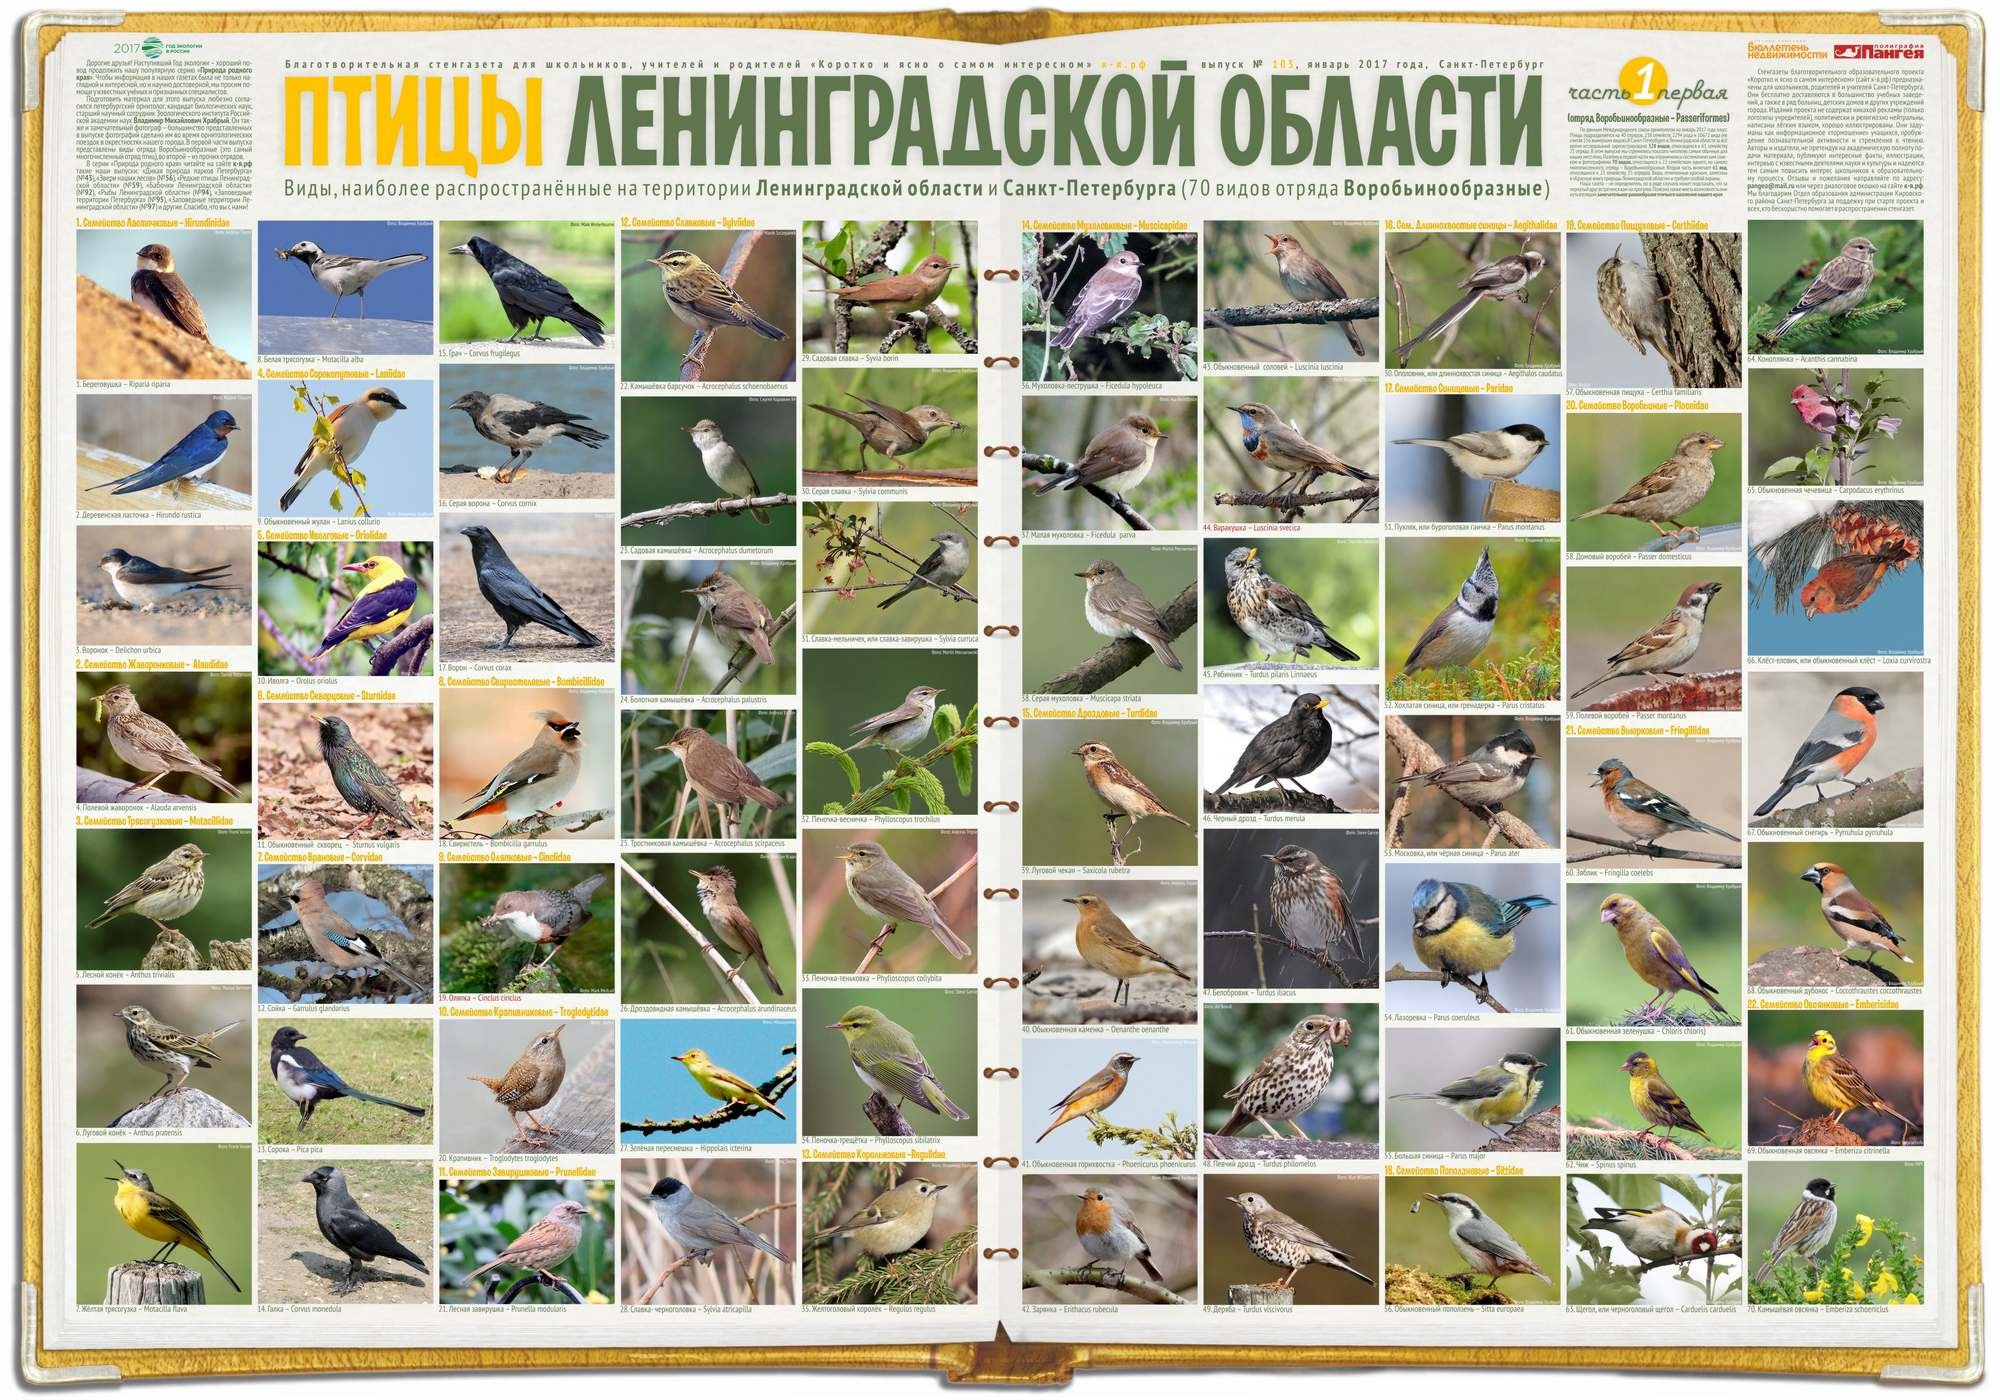 птицы средней россии фото